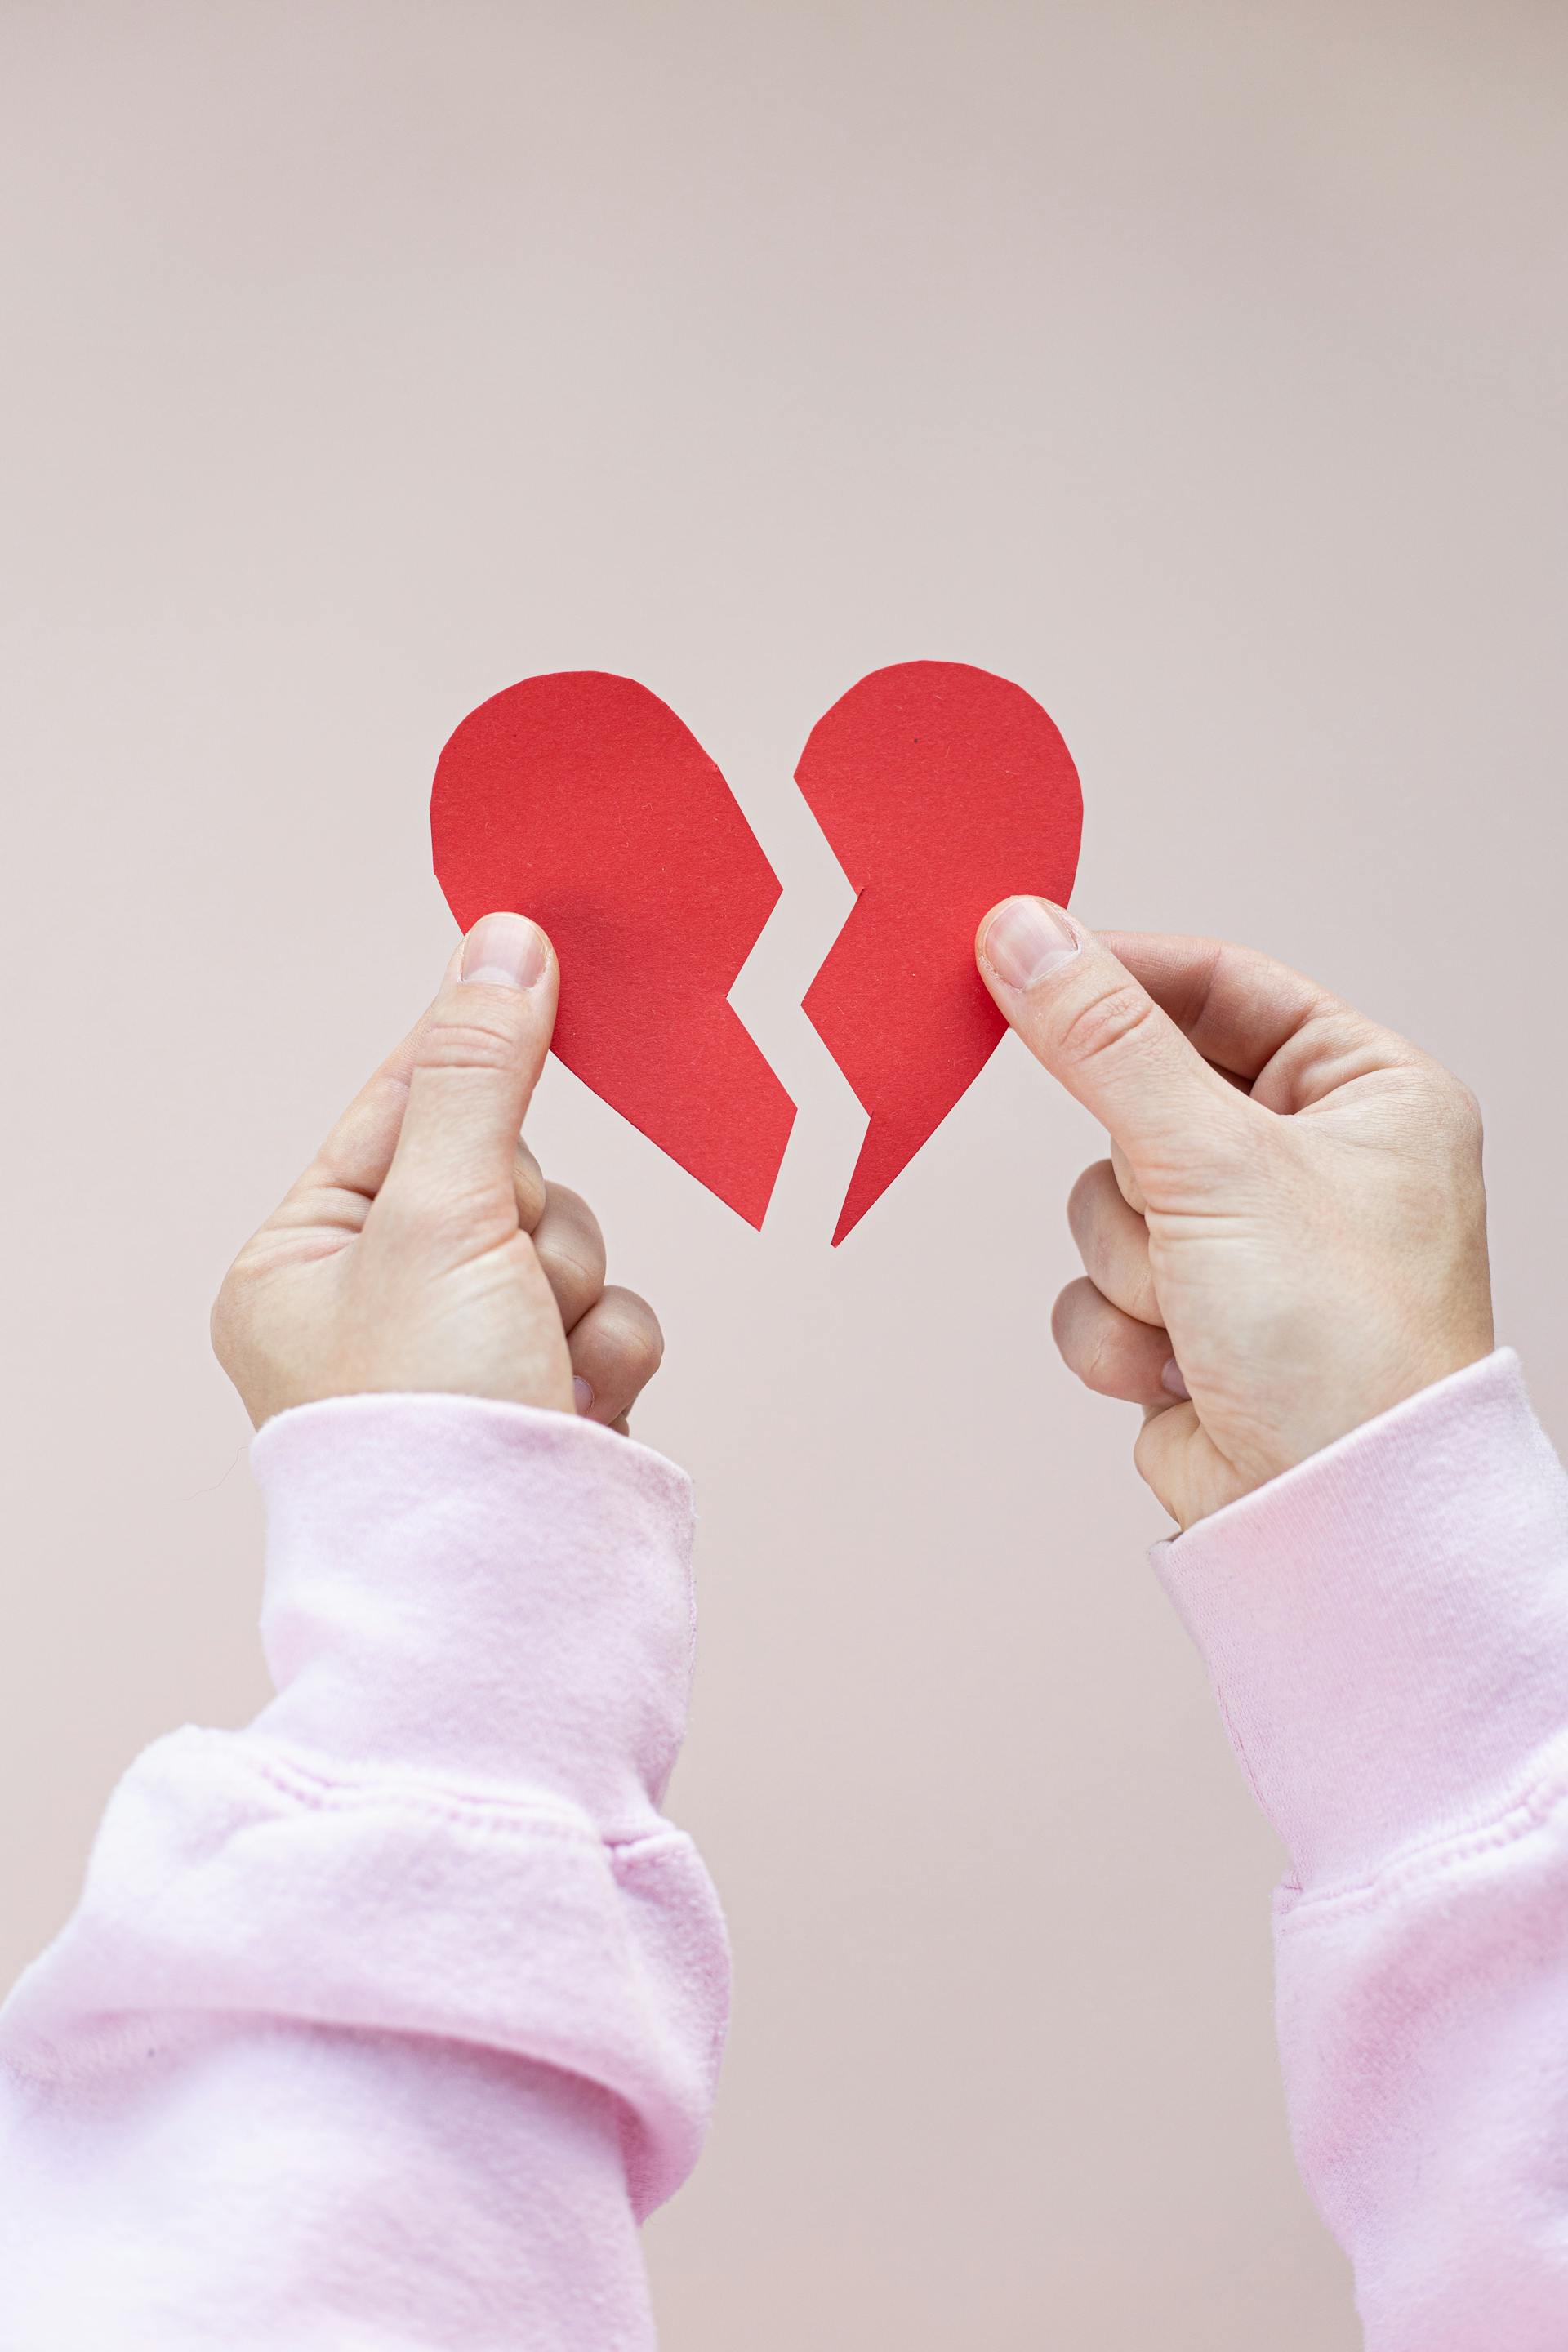 Una persona sostiene un corazón de papel rojo roto | Fuente: Pexels